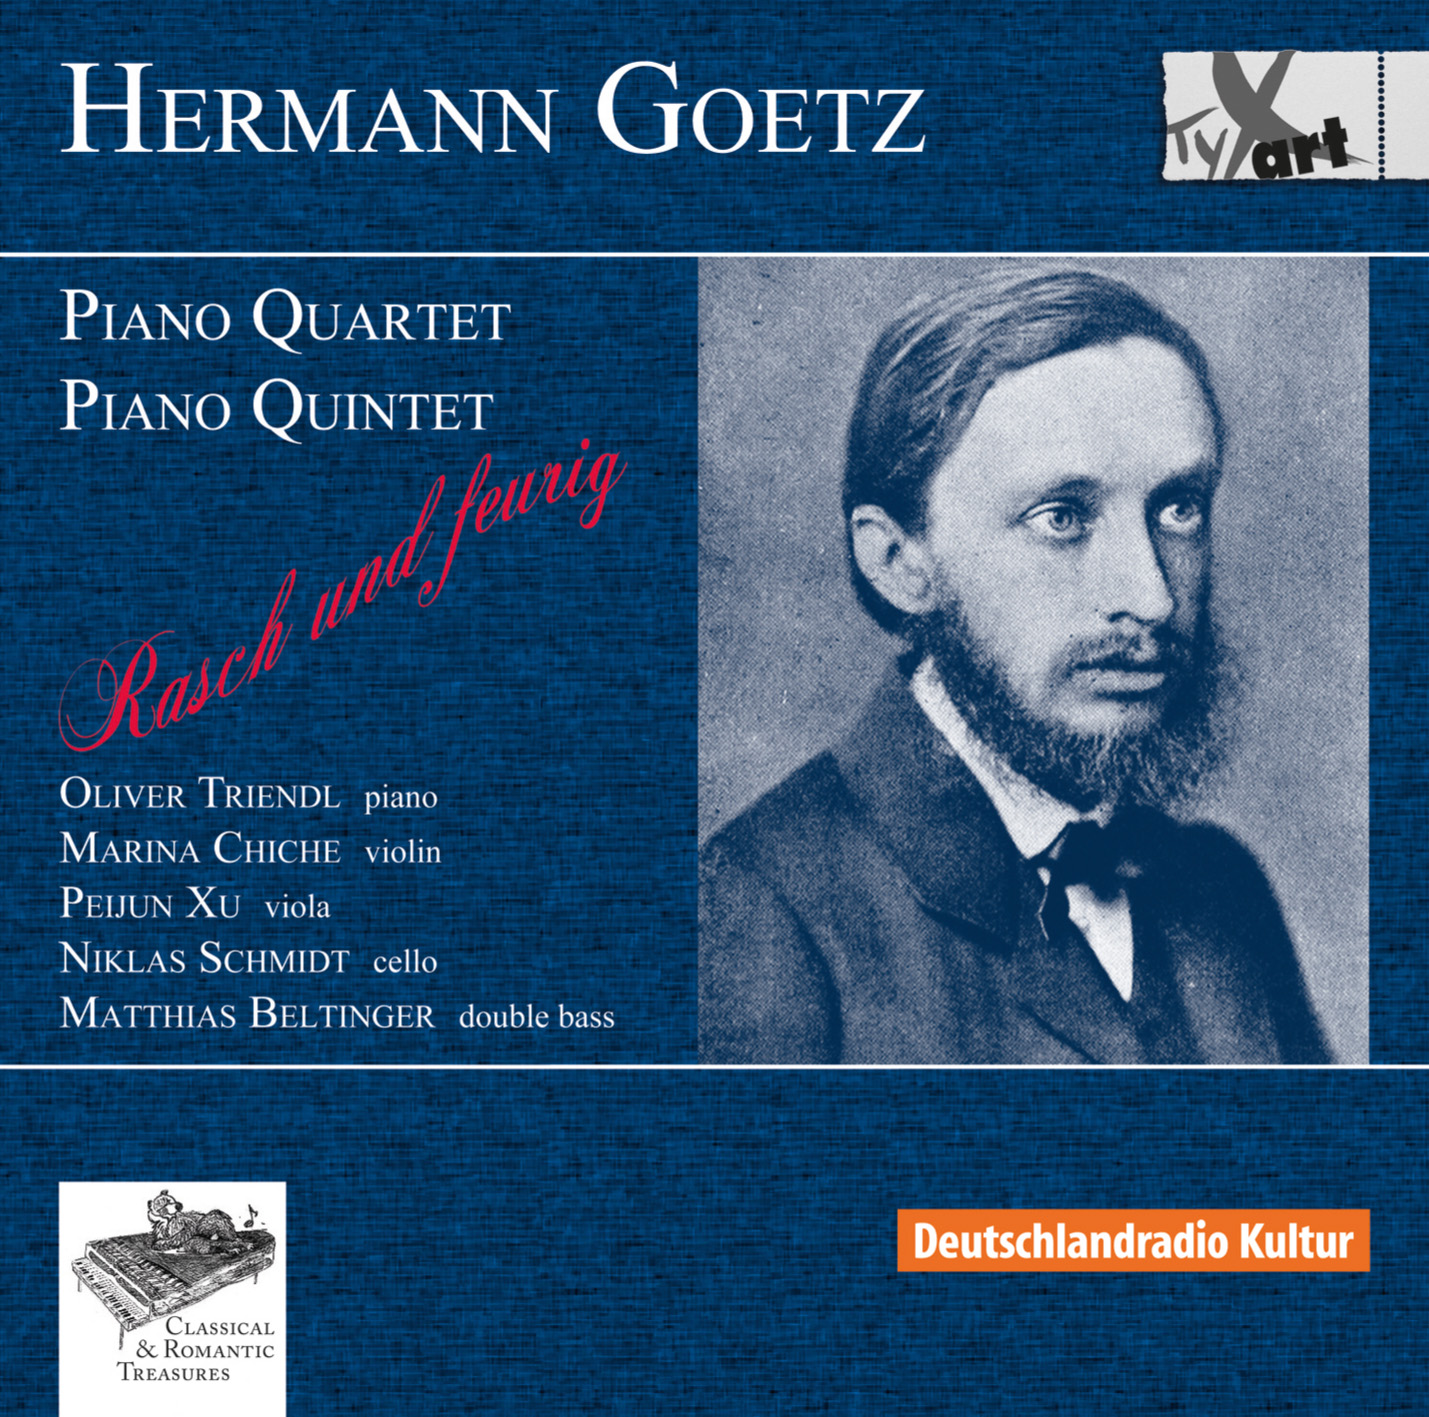 Hermann Goetz: Piano Quartet and Piano Quintet